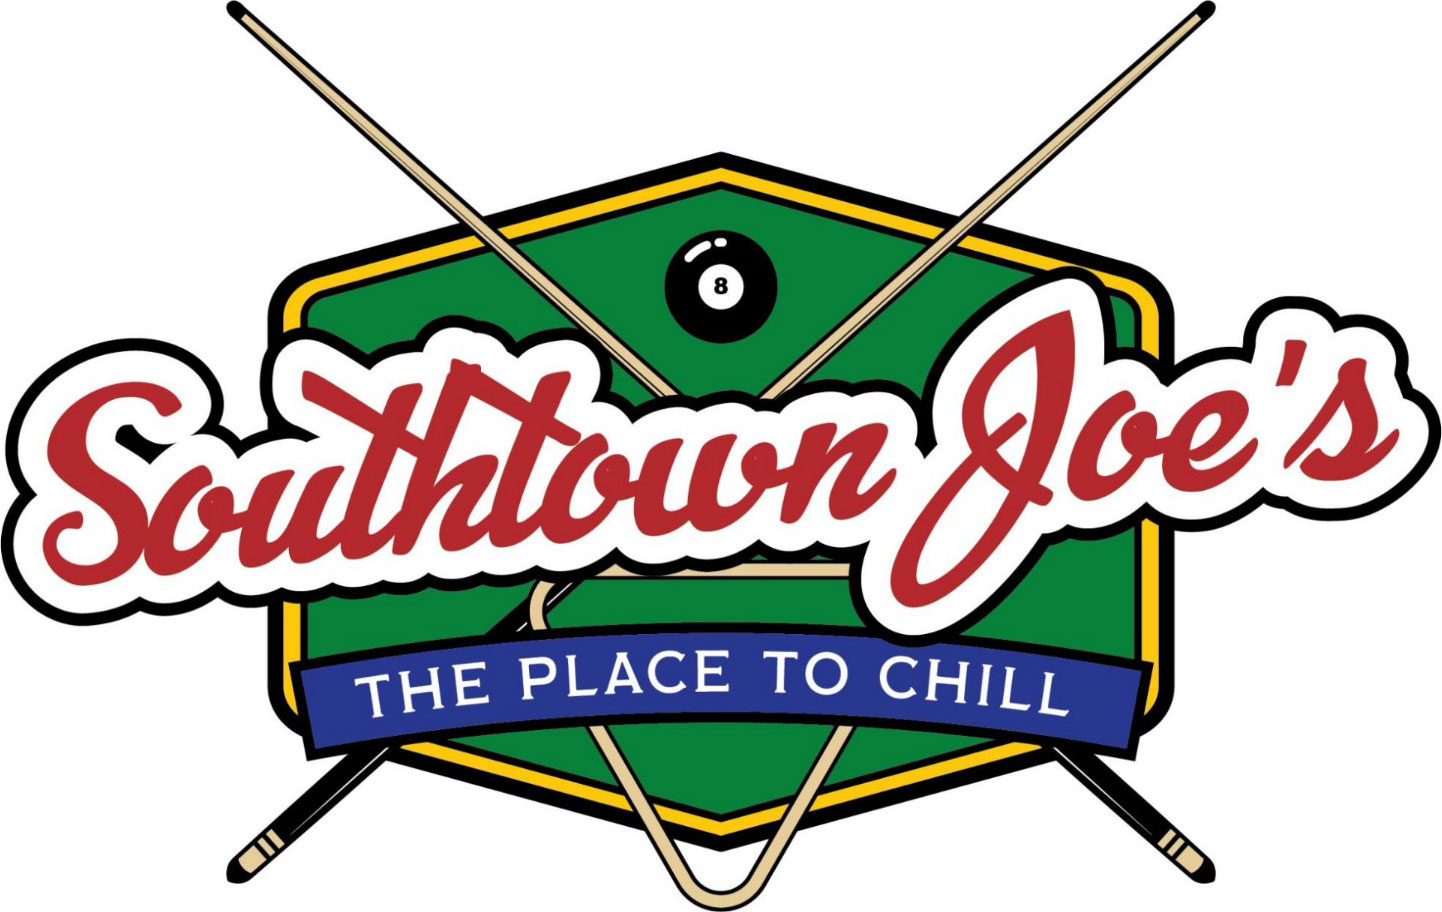 Southtown Joe's logo